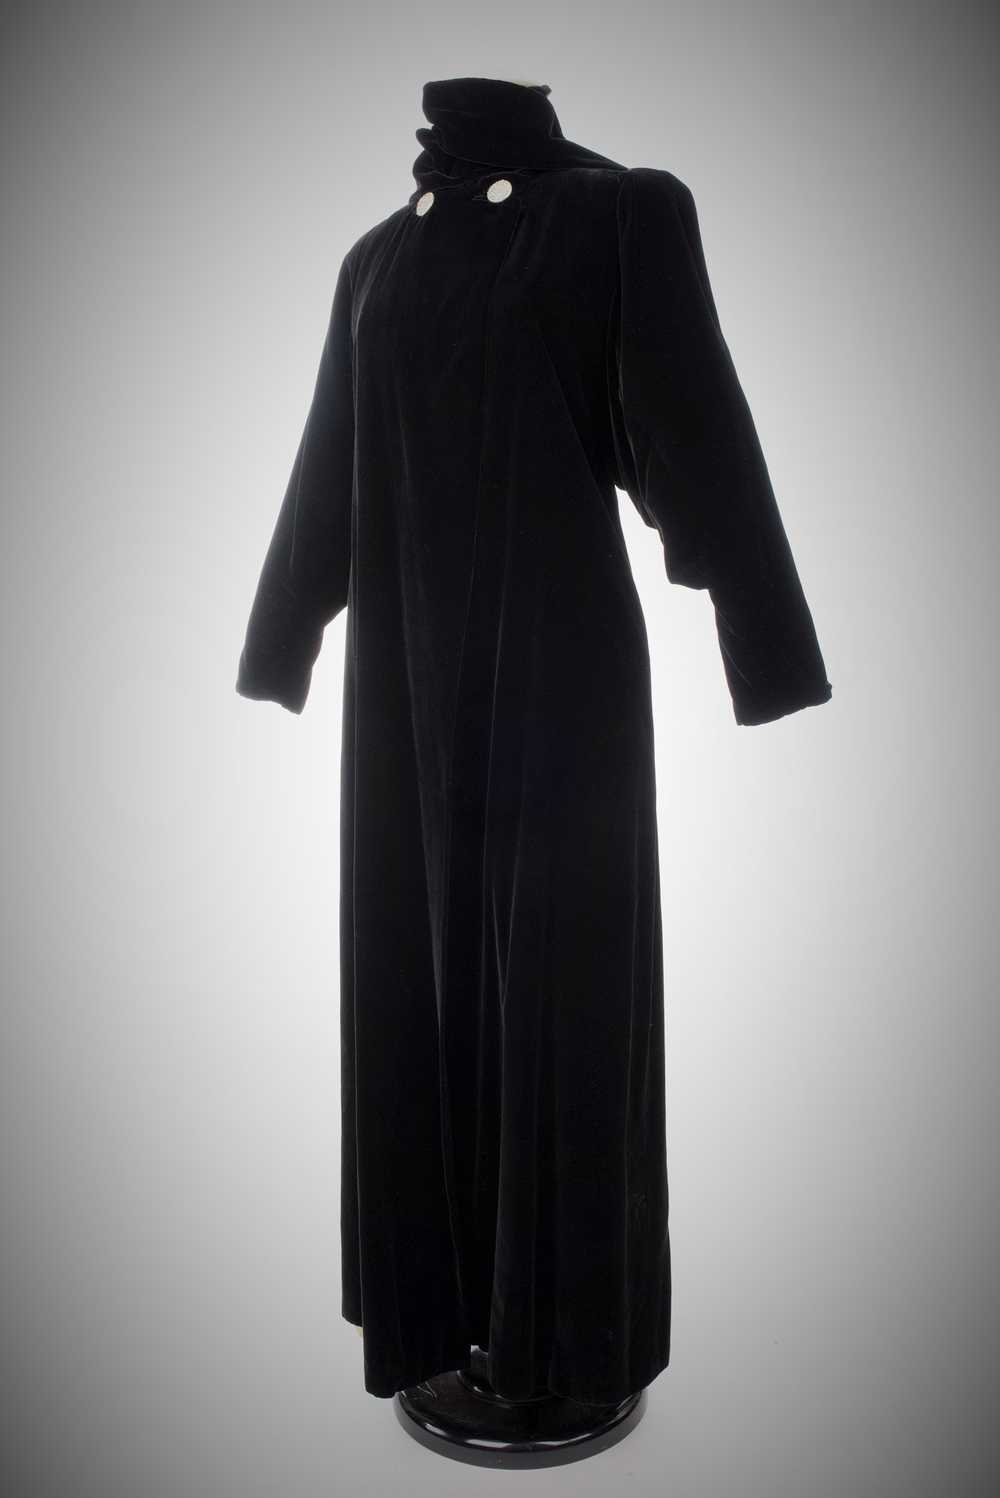 Velvet Evening Coat by Lucien Lelong Circa 1937 - image 9